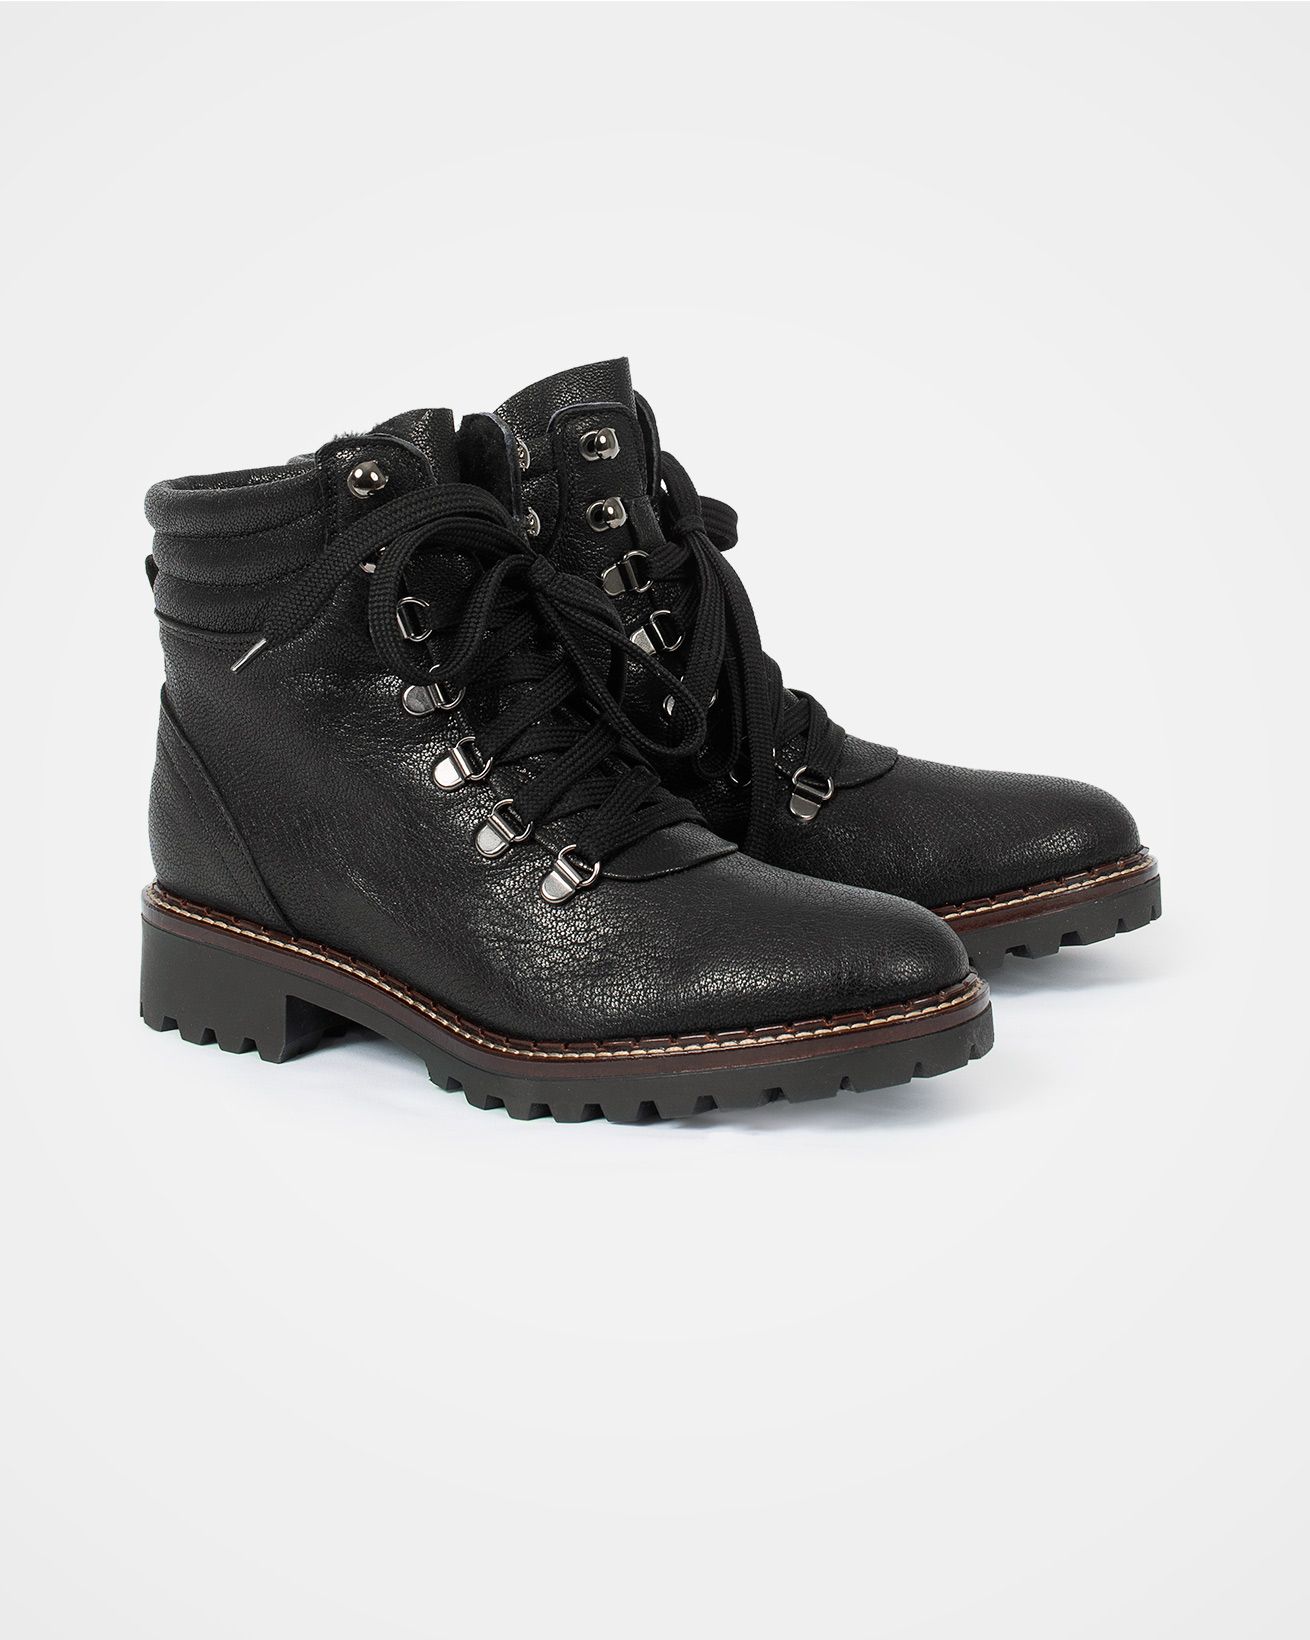 7621_hiker-boot_black-leather_pair.jpg